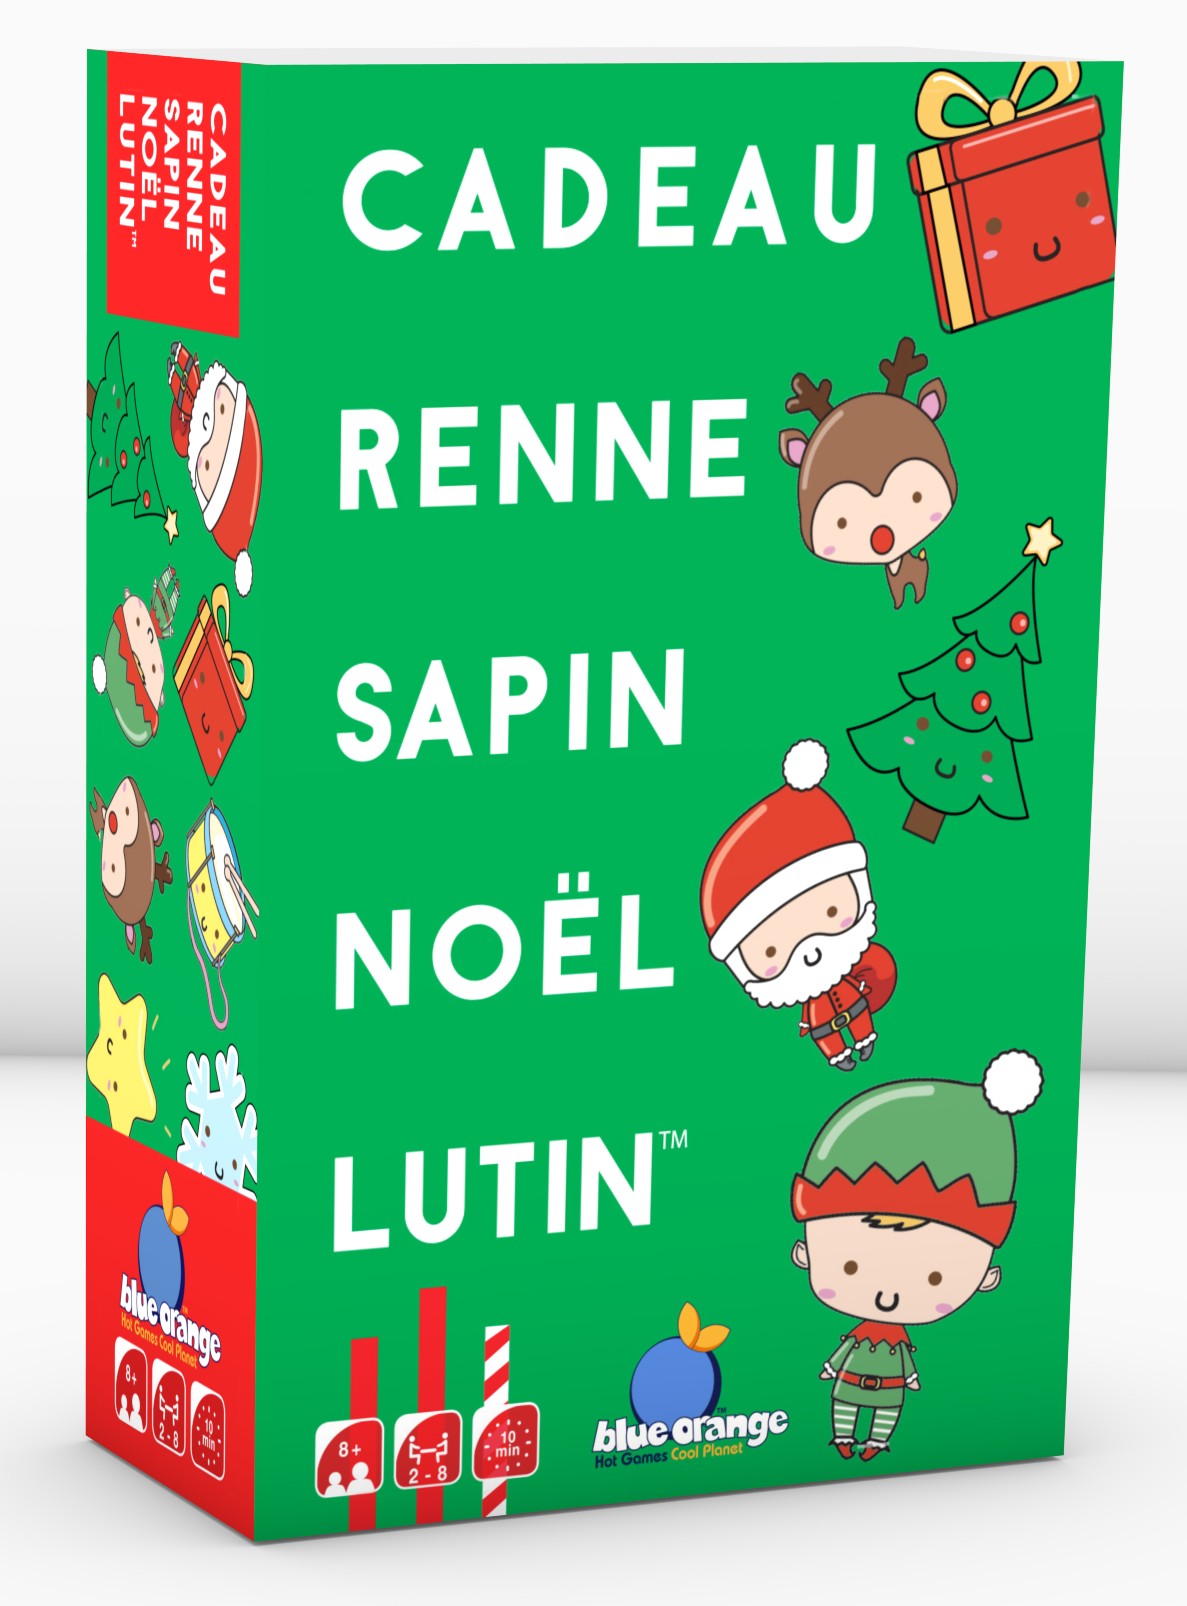 Boîte du jeu Cadeau Renne Sapin Noël Lutin